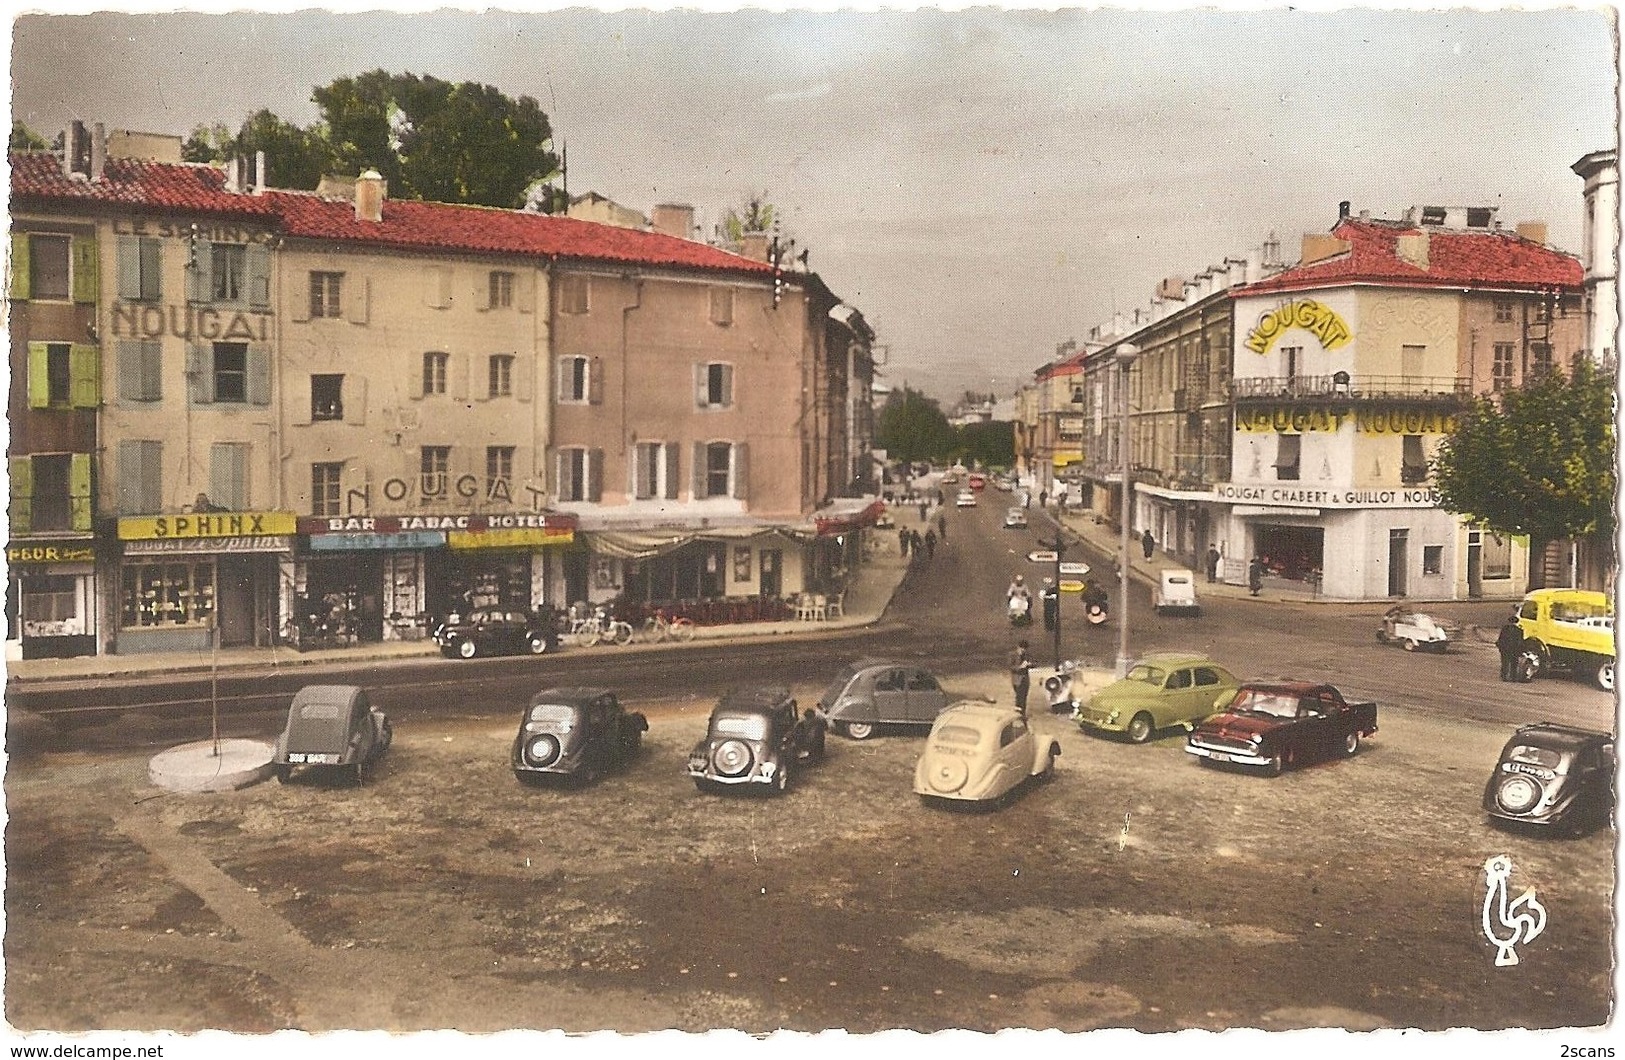 Dépt 26 - MONTÉLIMAR - La Place D'Aygu - (CPSM 8,9 X 13,9 Cm) - Automobiles Anciennes CITROËN, Etc. - Montelimar